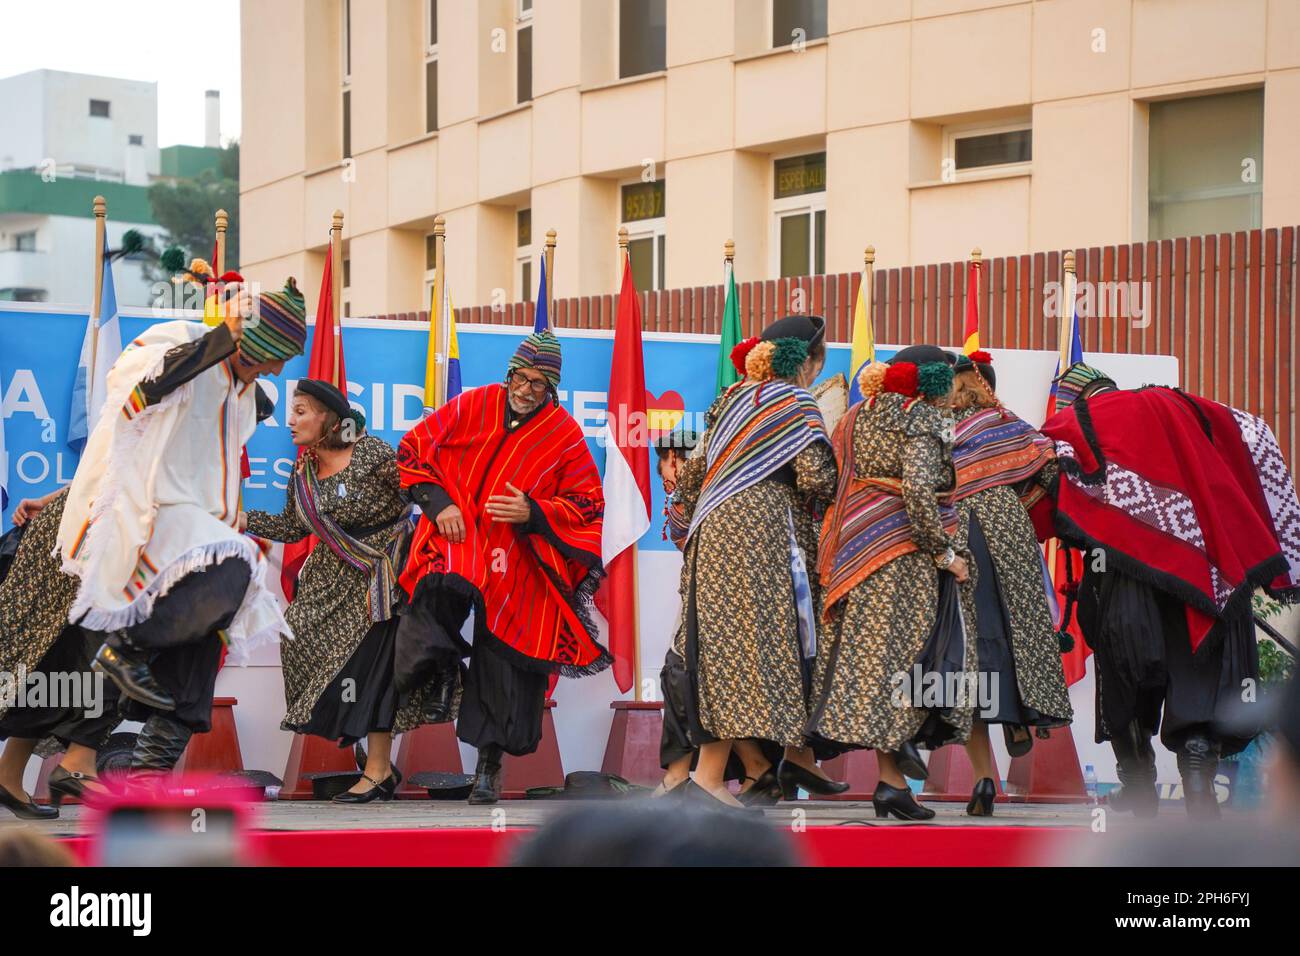 Torremolinos. Groupe de danse interprétant la danse traditionnelle de l'amérique du Sud, Torremolinos, dia del residente, événement multiculturel, Costa del sol, Espagne. Banque D'Images